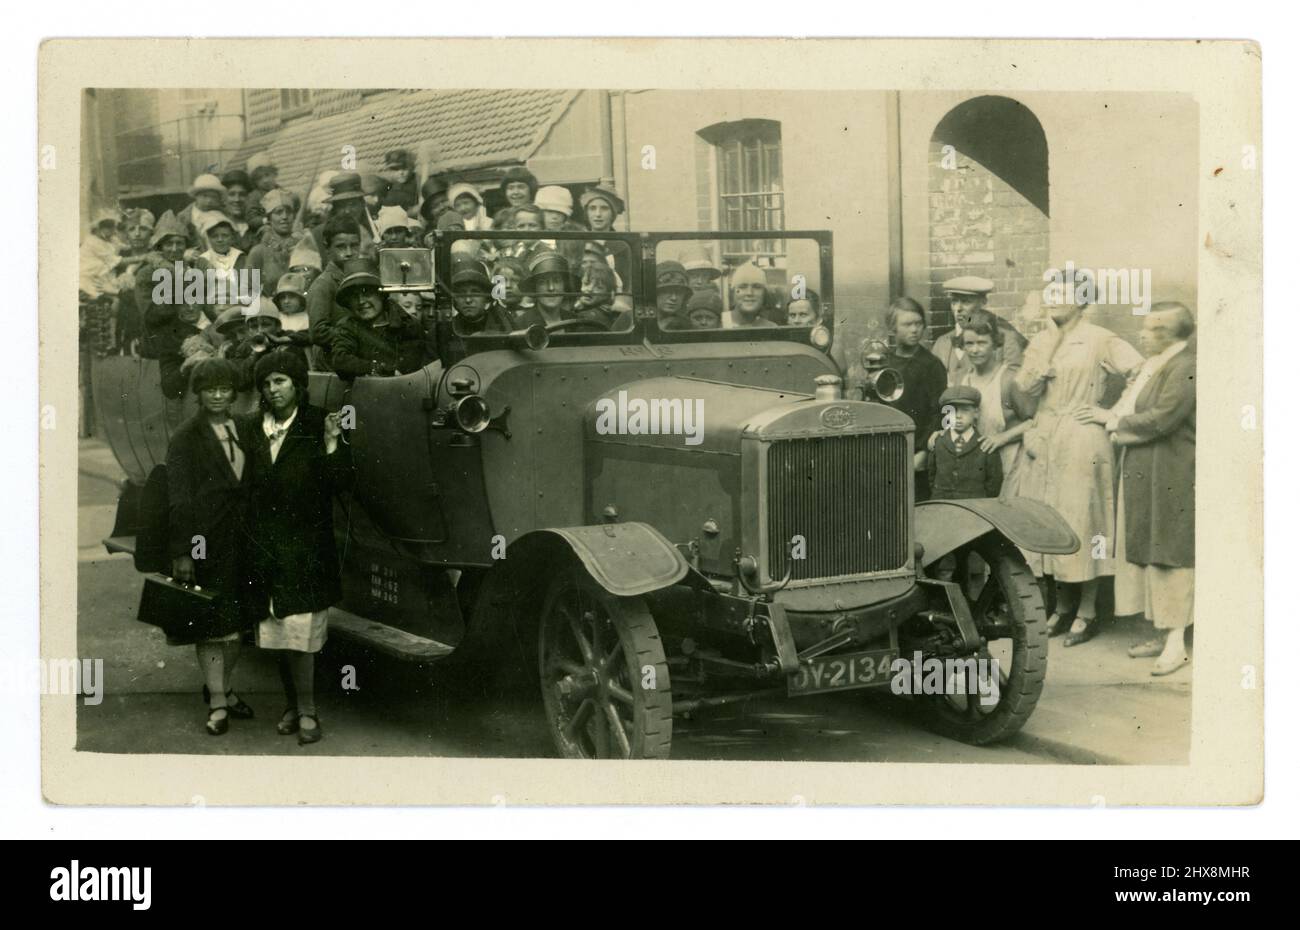 Original 1920er Jahre Postkarte Charabanc, scheint eine Kindergeburtstag oder besonderen Tag, wie einige tragen Partyhüte, viele Kinder in den Charabanc gepackt, mit ihren Eltern, Zuschauer auf der Straße. Brighton, Sussex, England, Großbritannien Stockfoto